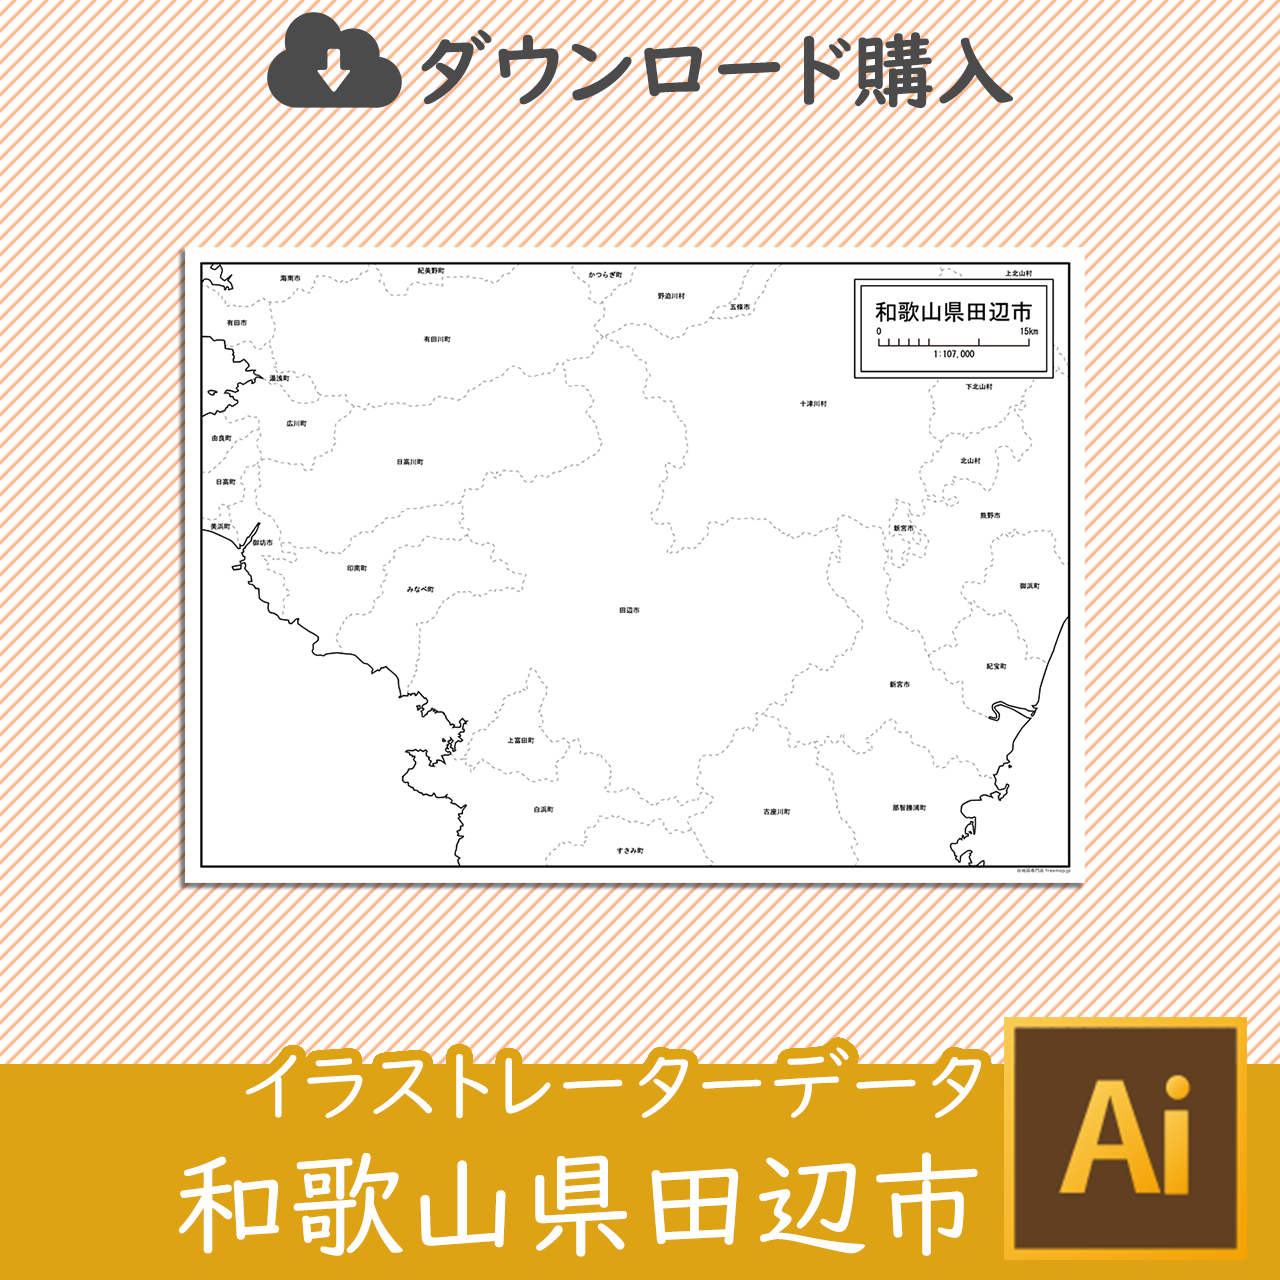 田辺市のaiデータのサムネイル画像